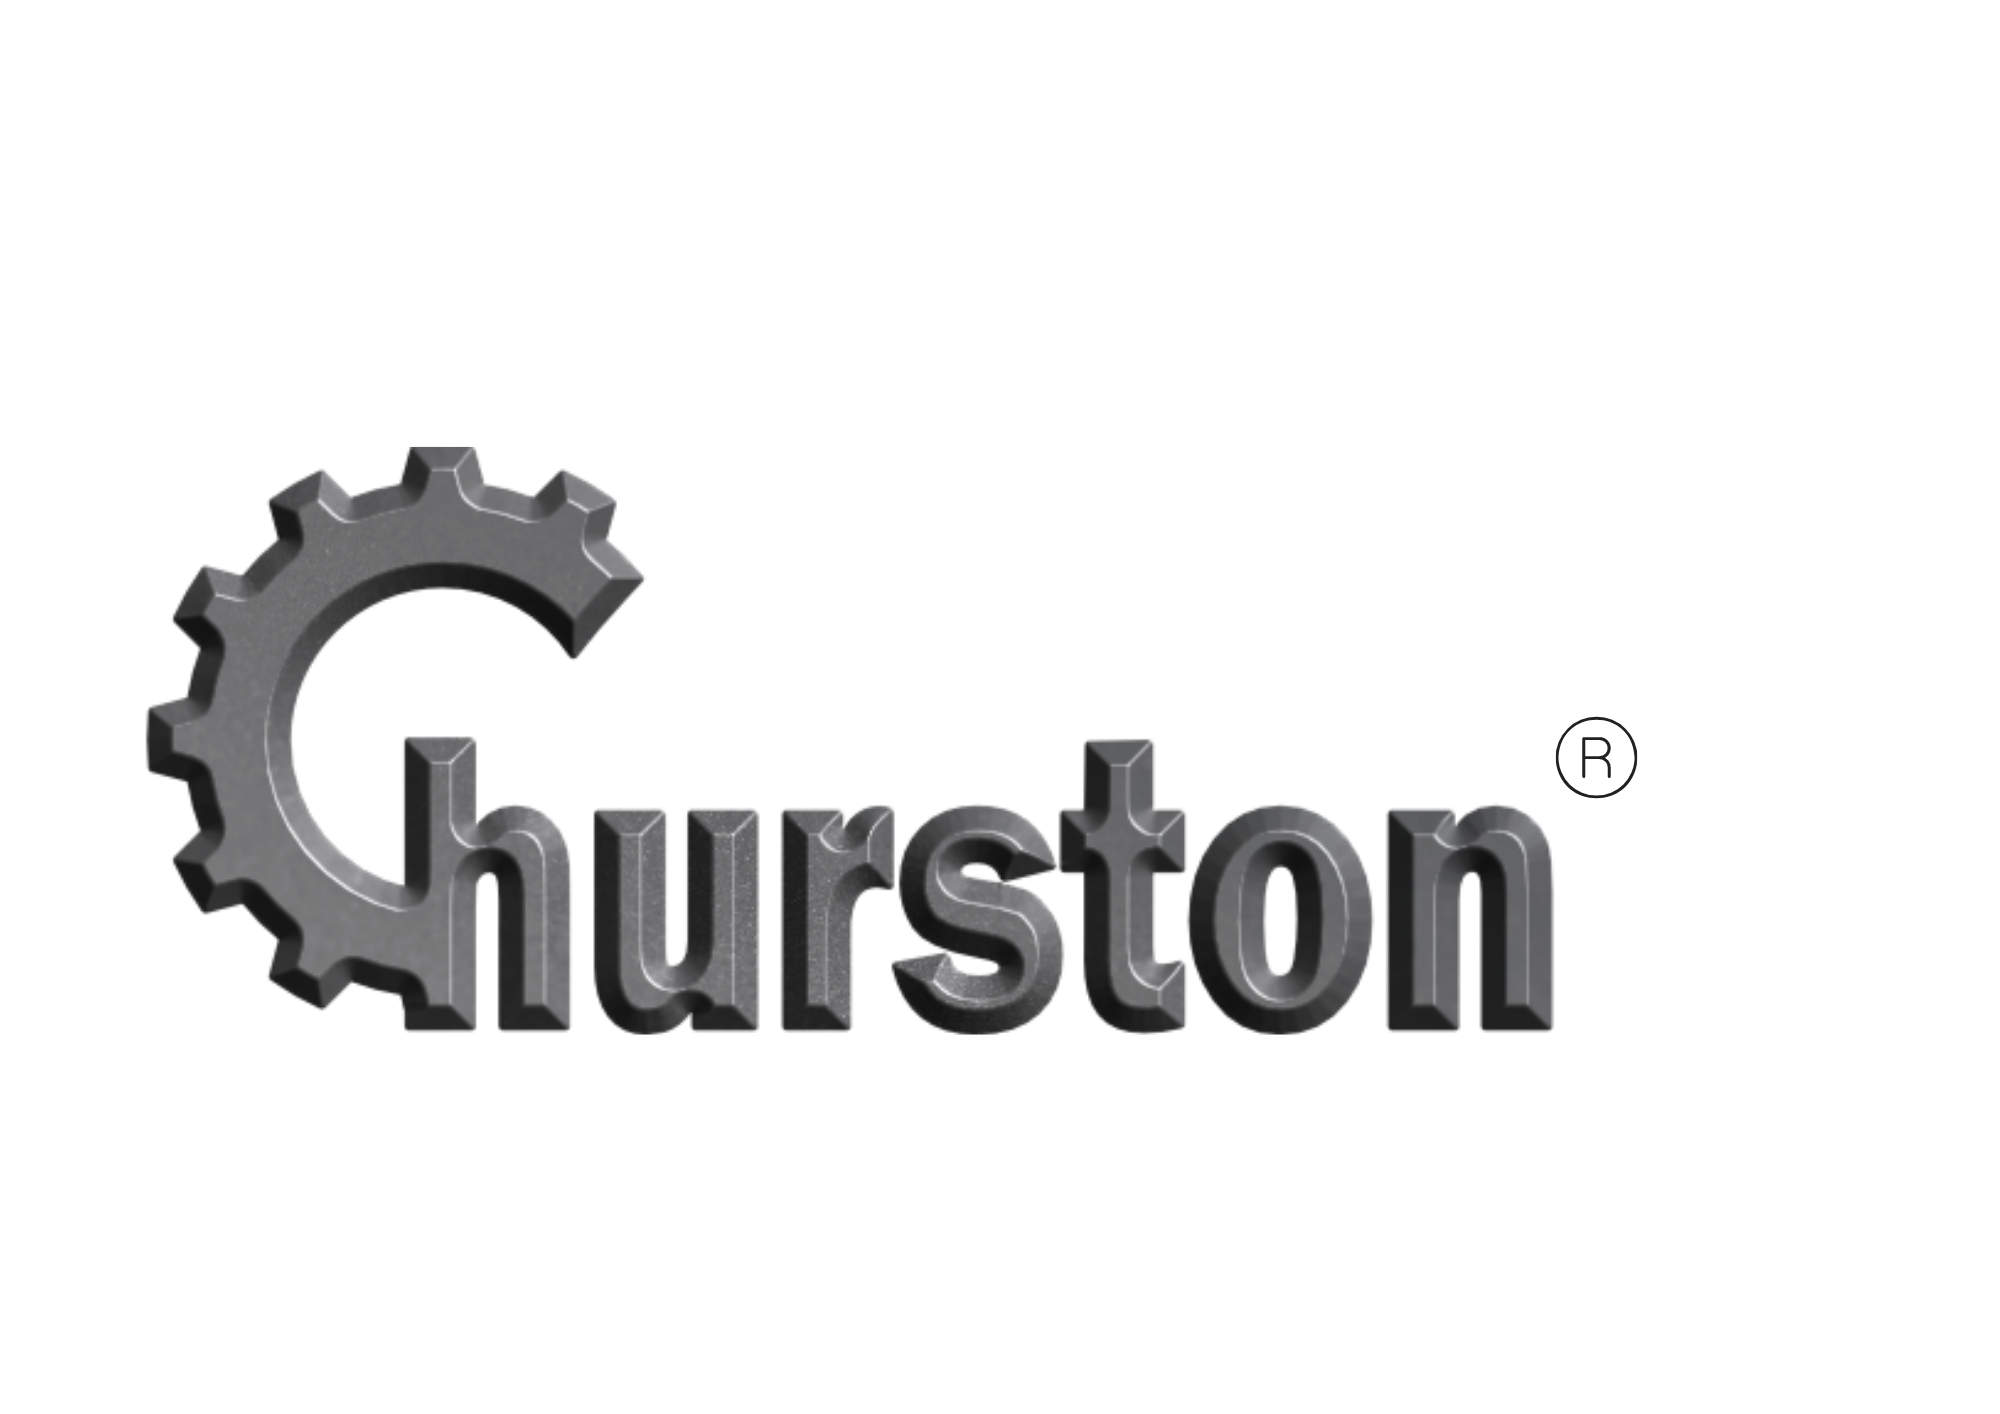 Churston Logo